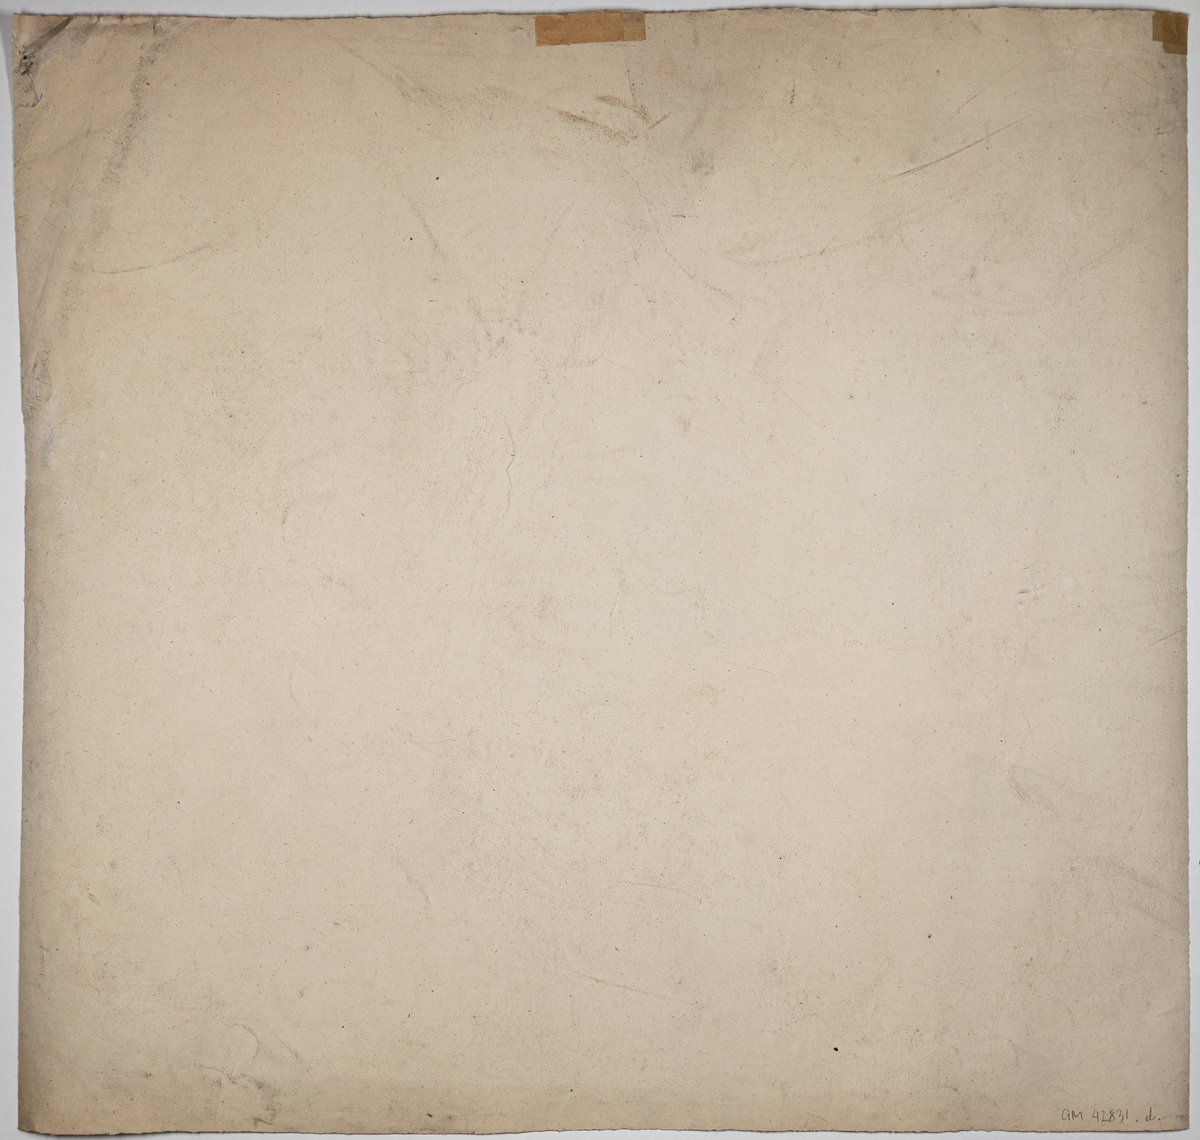 Antikstudie, avbildning av rytande lejon. Signerad Ida von Schulzenheim. Påskrift "Boklund? 1879?" 1880?